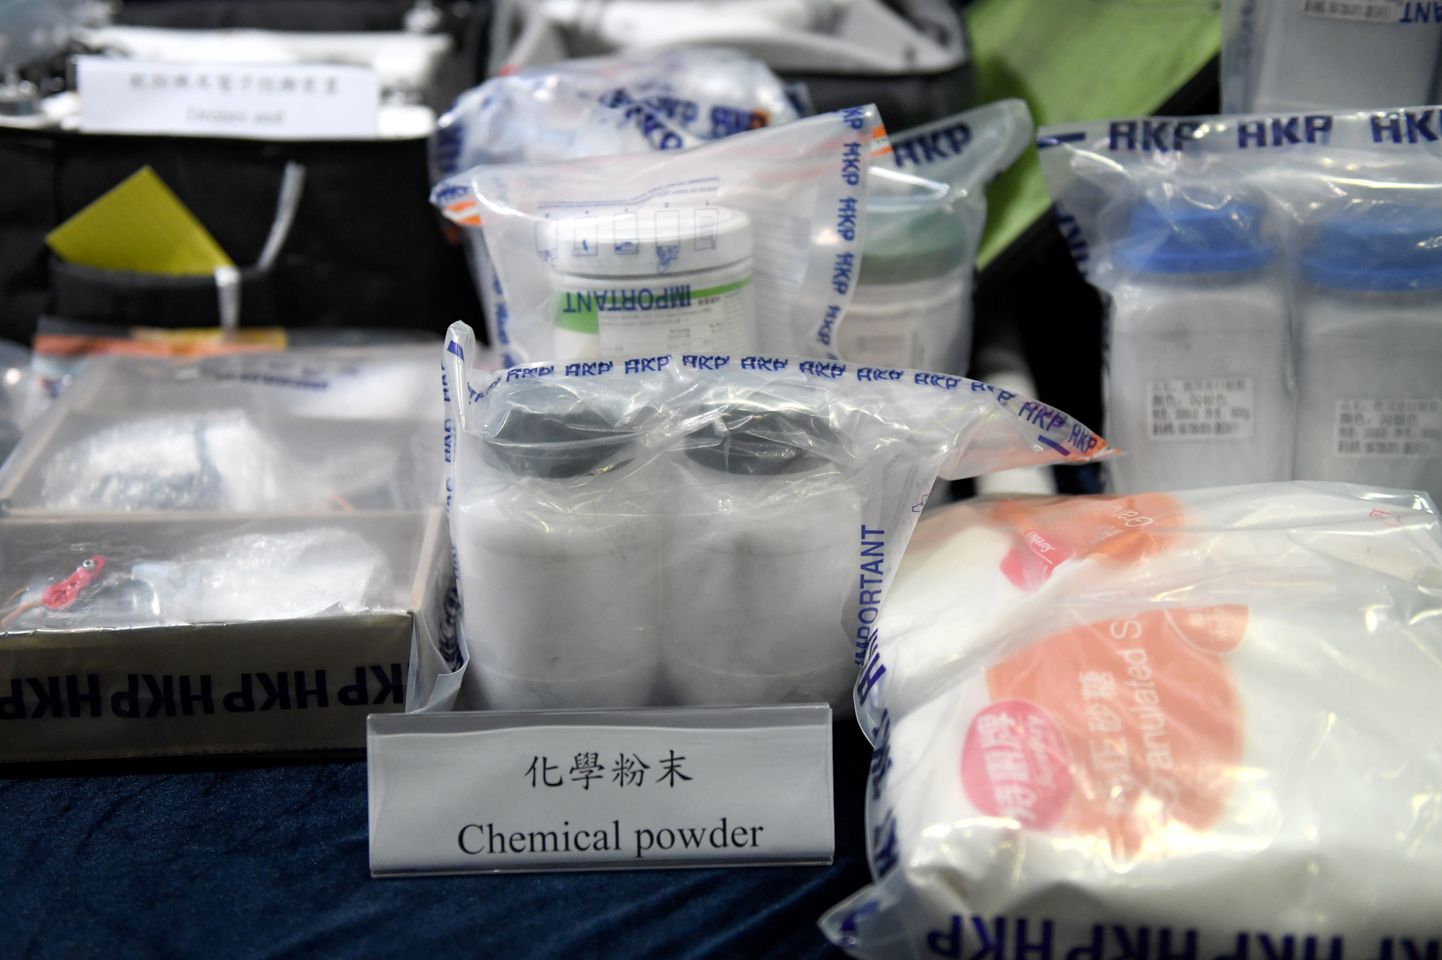 Hong Kongi politsei konfiskeeritud pommide valmistamise materjal. Foto on illustratiivne.